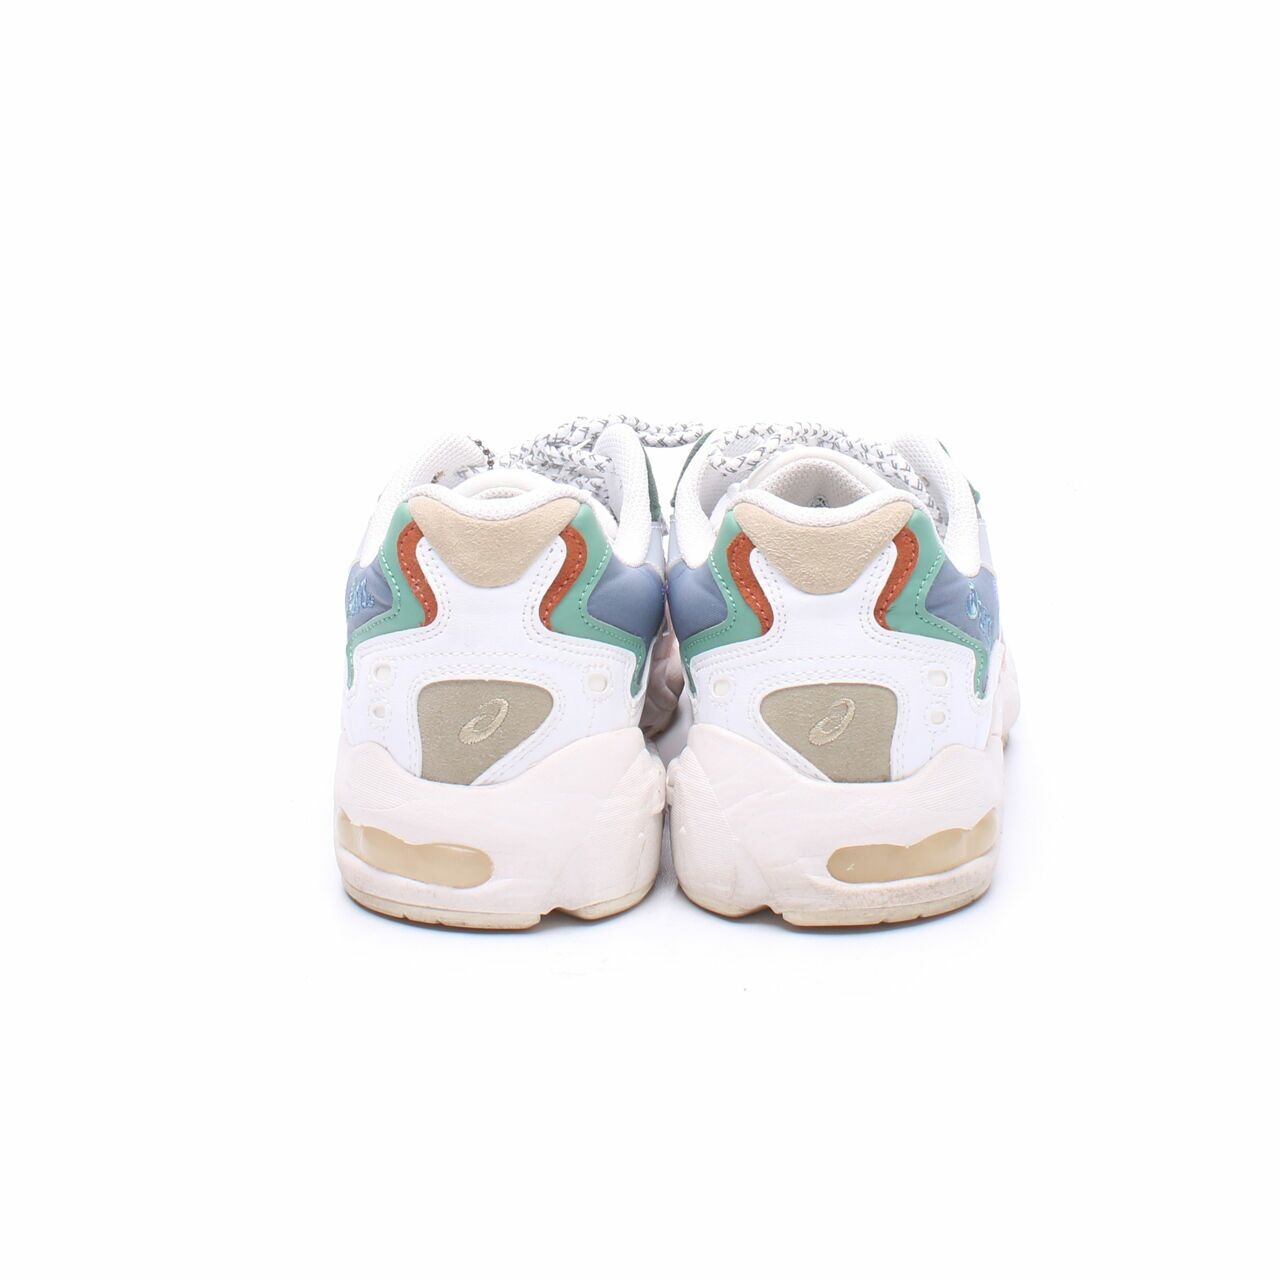 Asics Gel-kayano 5 OG White Sneakers